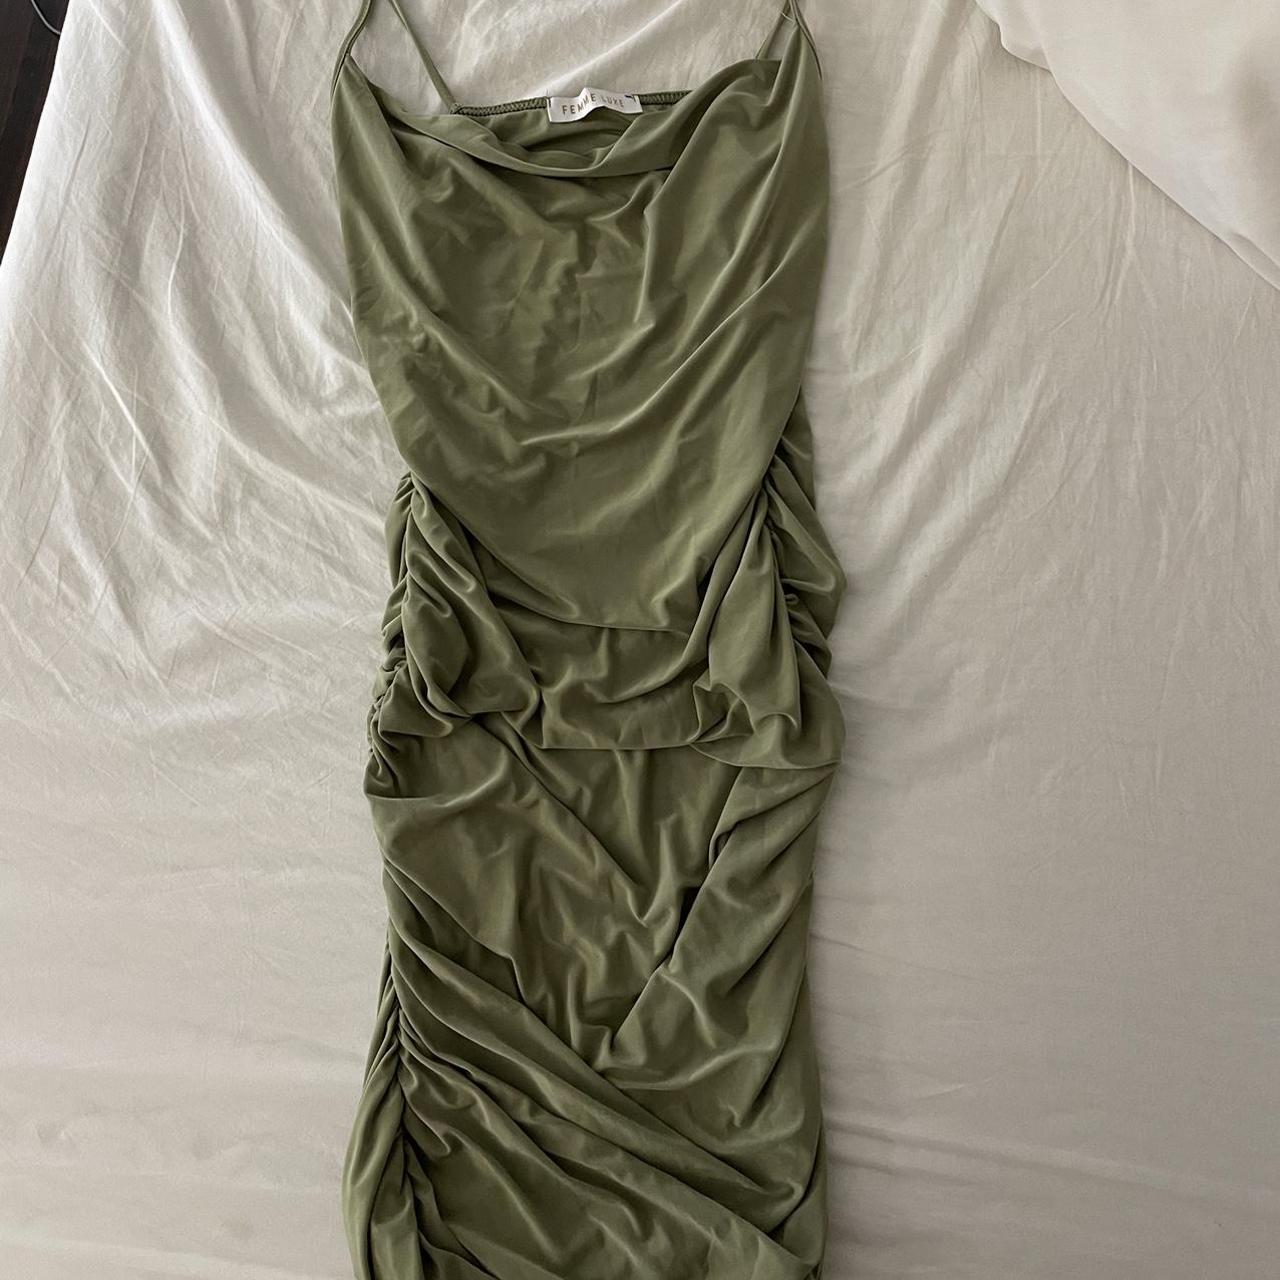 Femme Luxe Women's Green and Khaki Dress